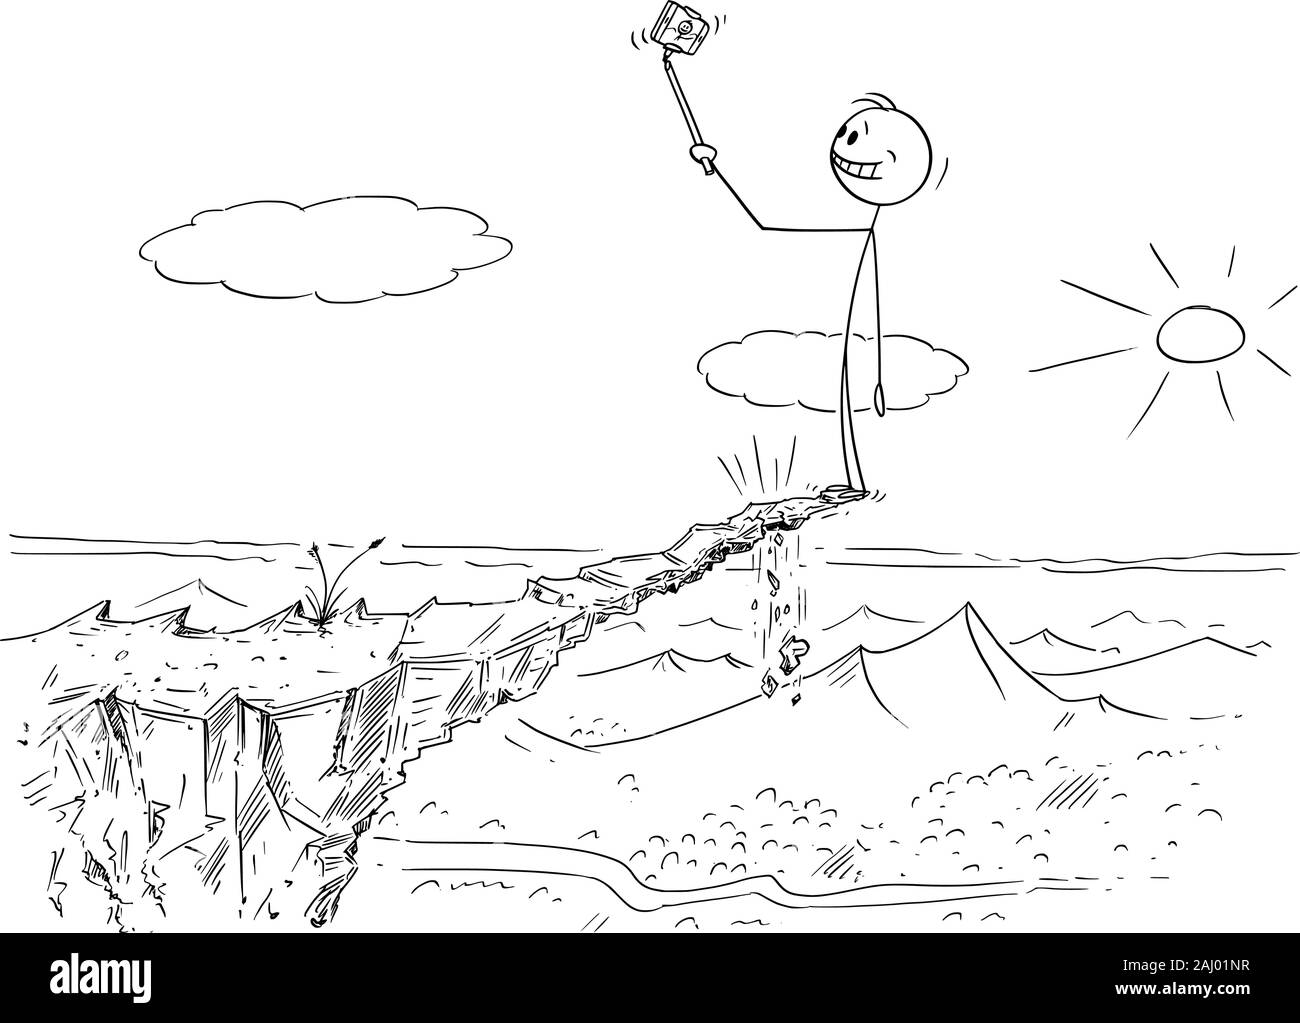 Vector cartoon stick figure dessin illustration conceptuelle de l'homme prenant photo dangereux sur selfies haute roche instable risquant sa vie, parce qu'il peut tomber. Illustration de Vecteur